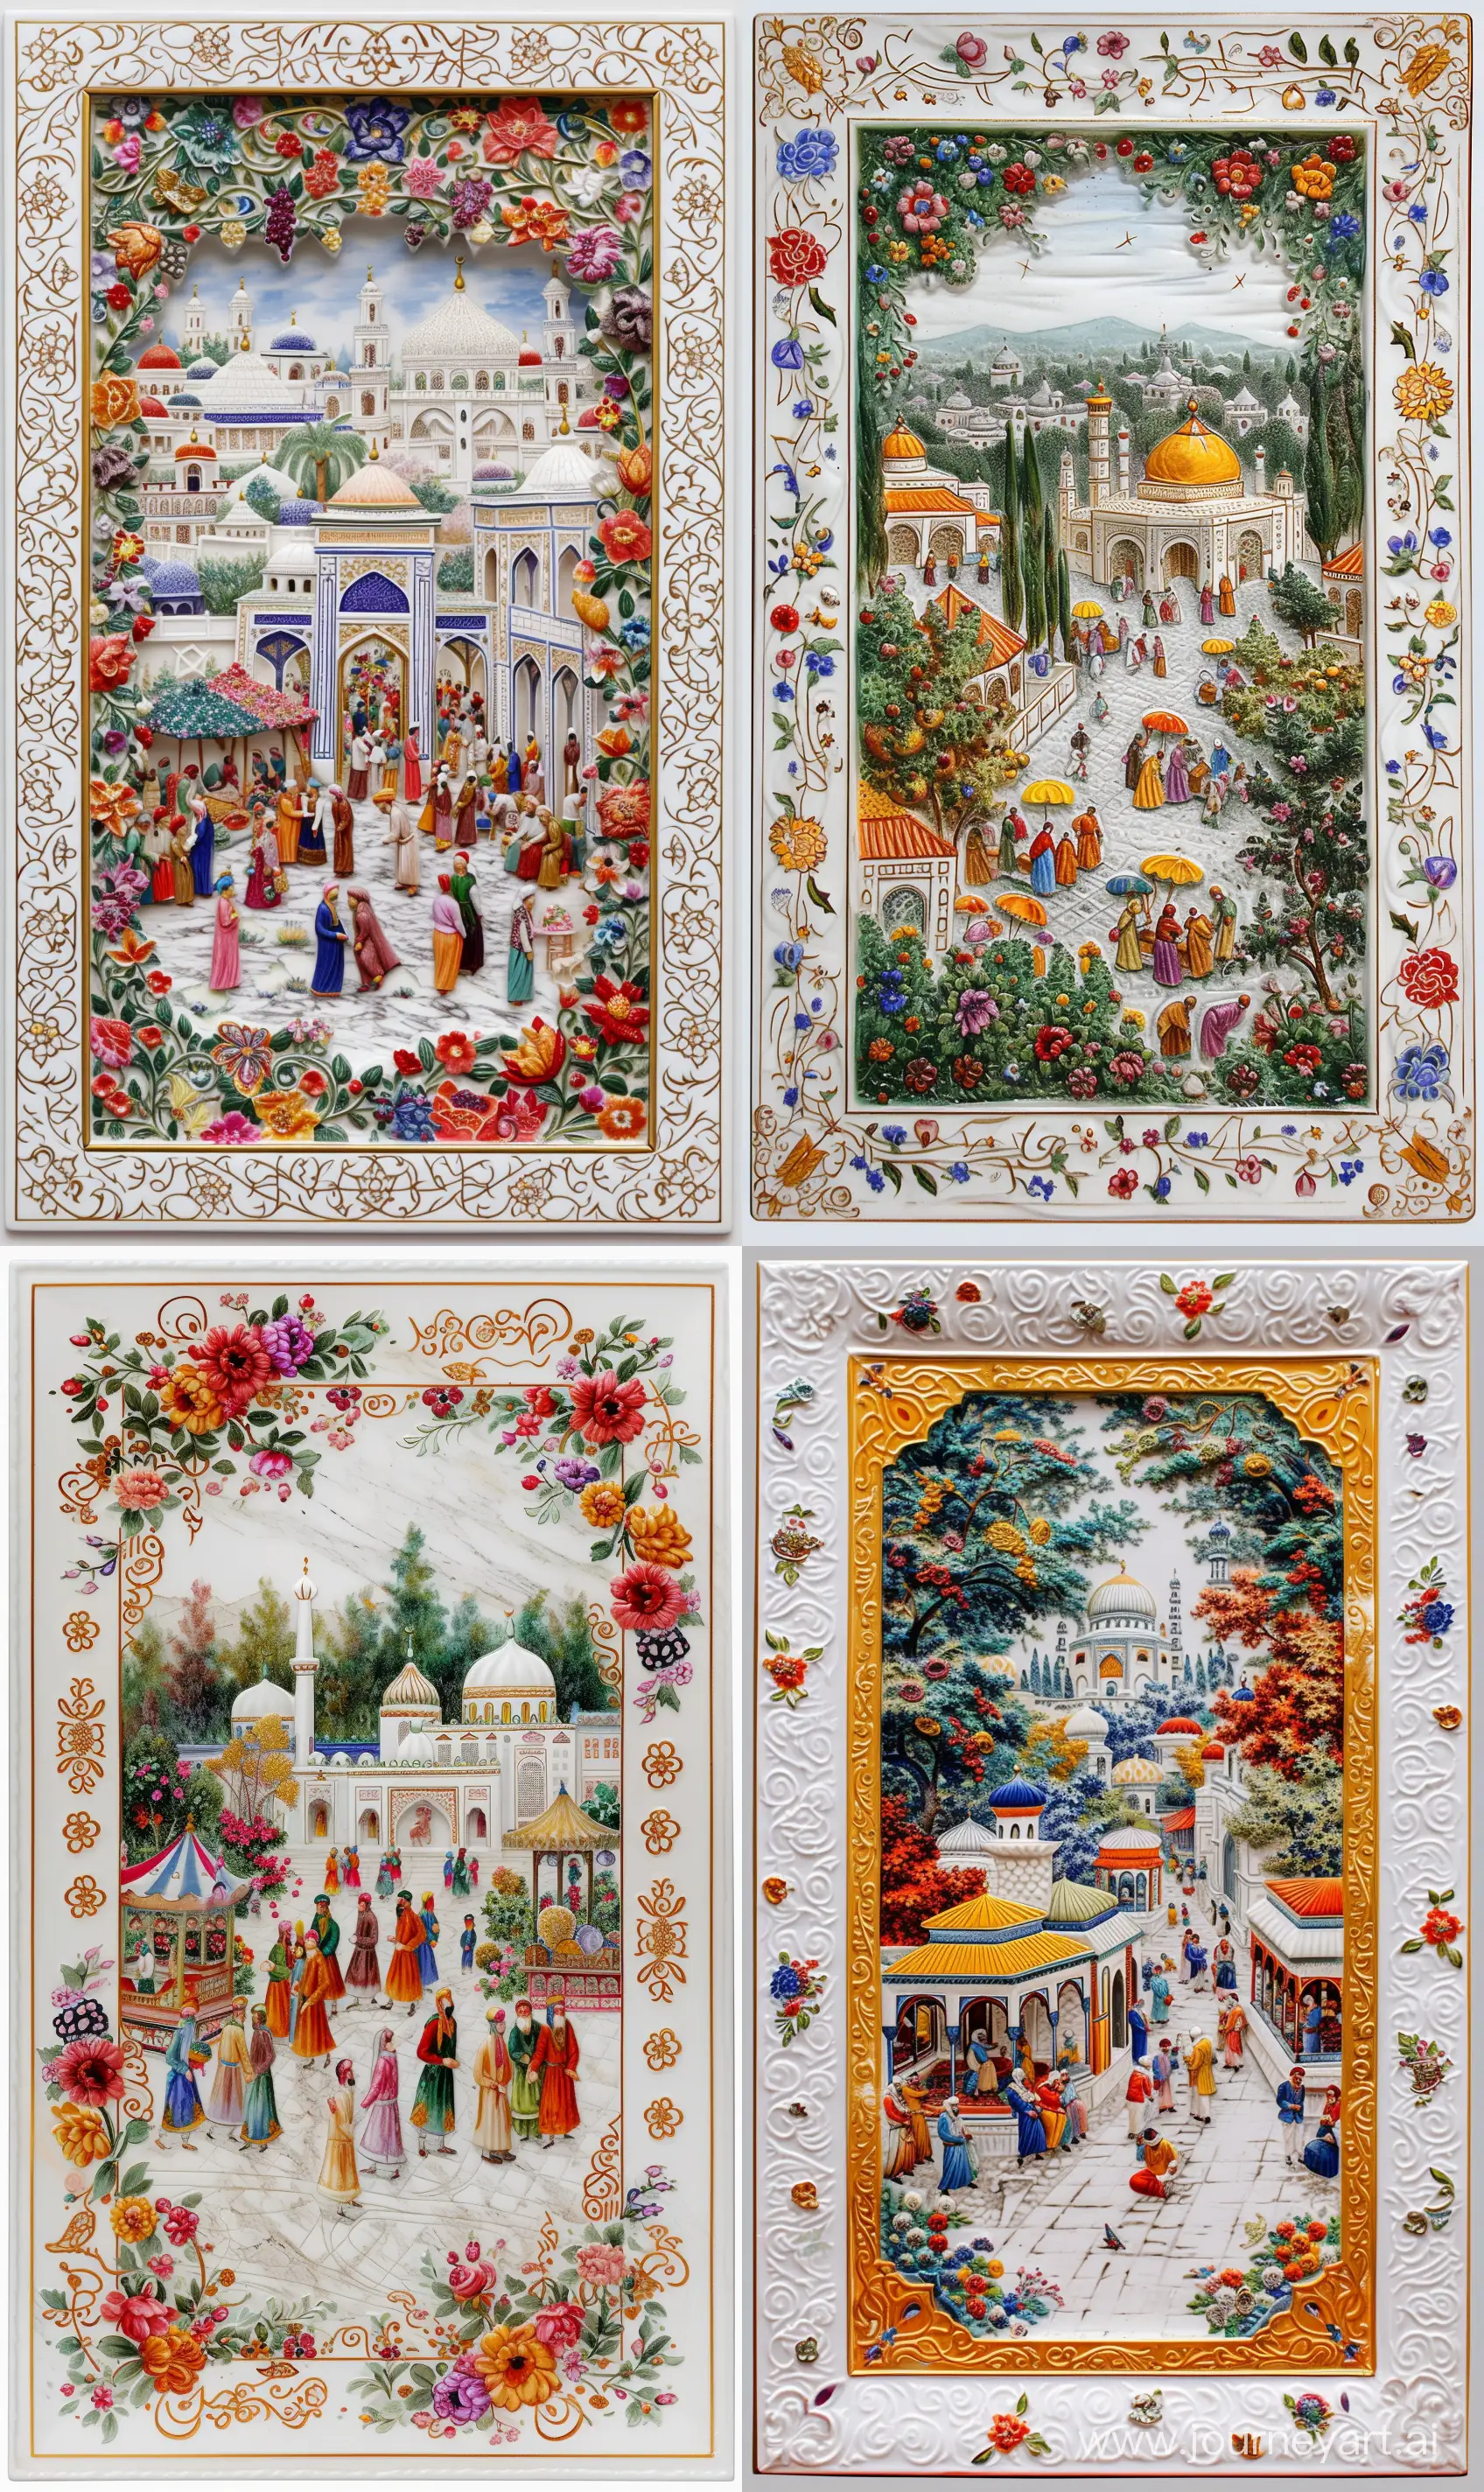 Islamic-Garden-Marketplace-Vibrant-Persian-Miniature-on-Iznik-Porcelain